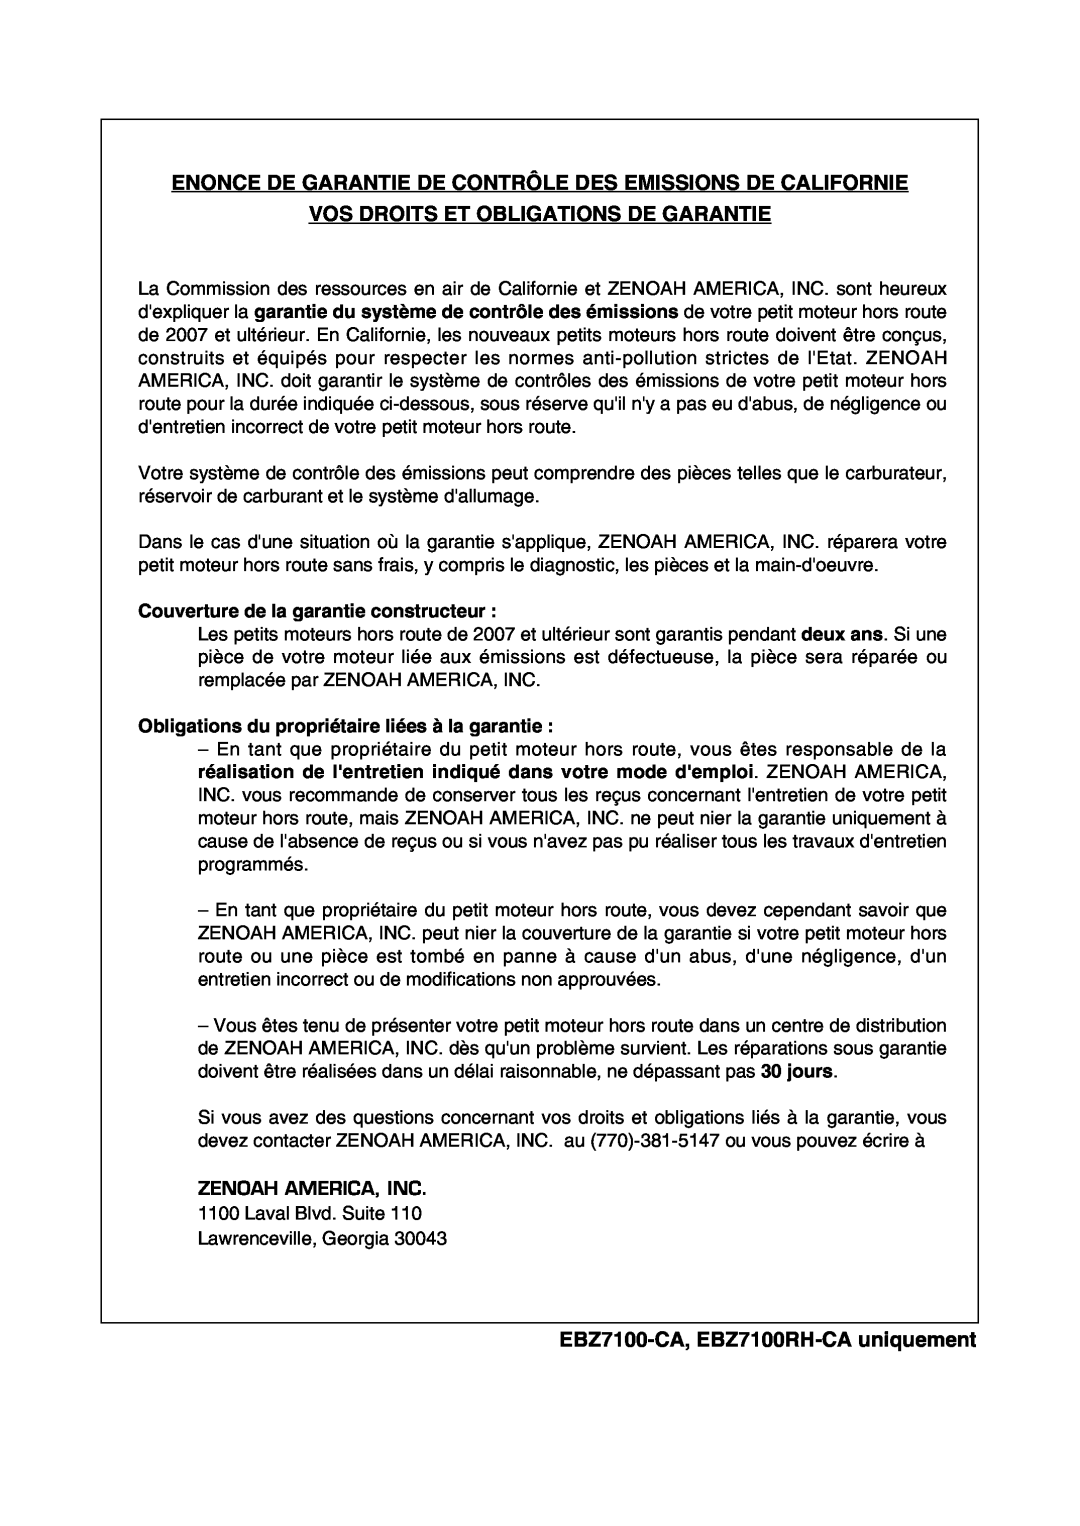 RedMax EBZ7100RH manual Enonce De Garantie De Contrôle Des Emissions De Californie, Vos Droits Et Obligations De Garantie 